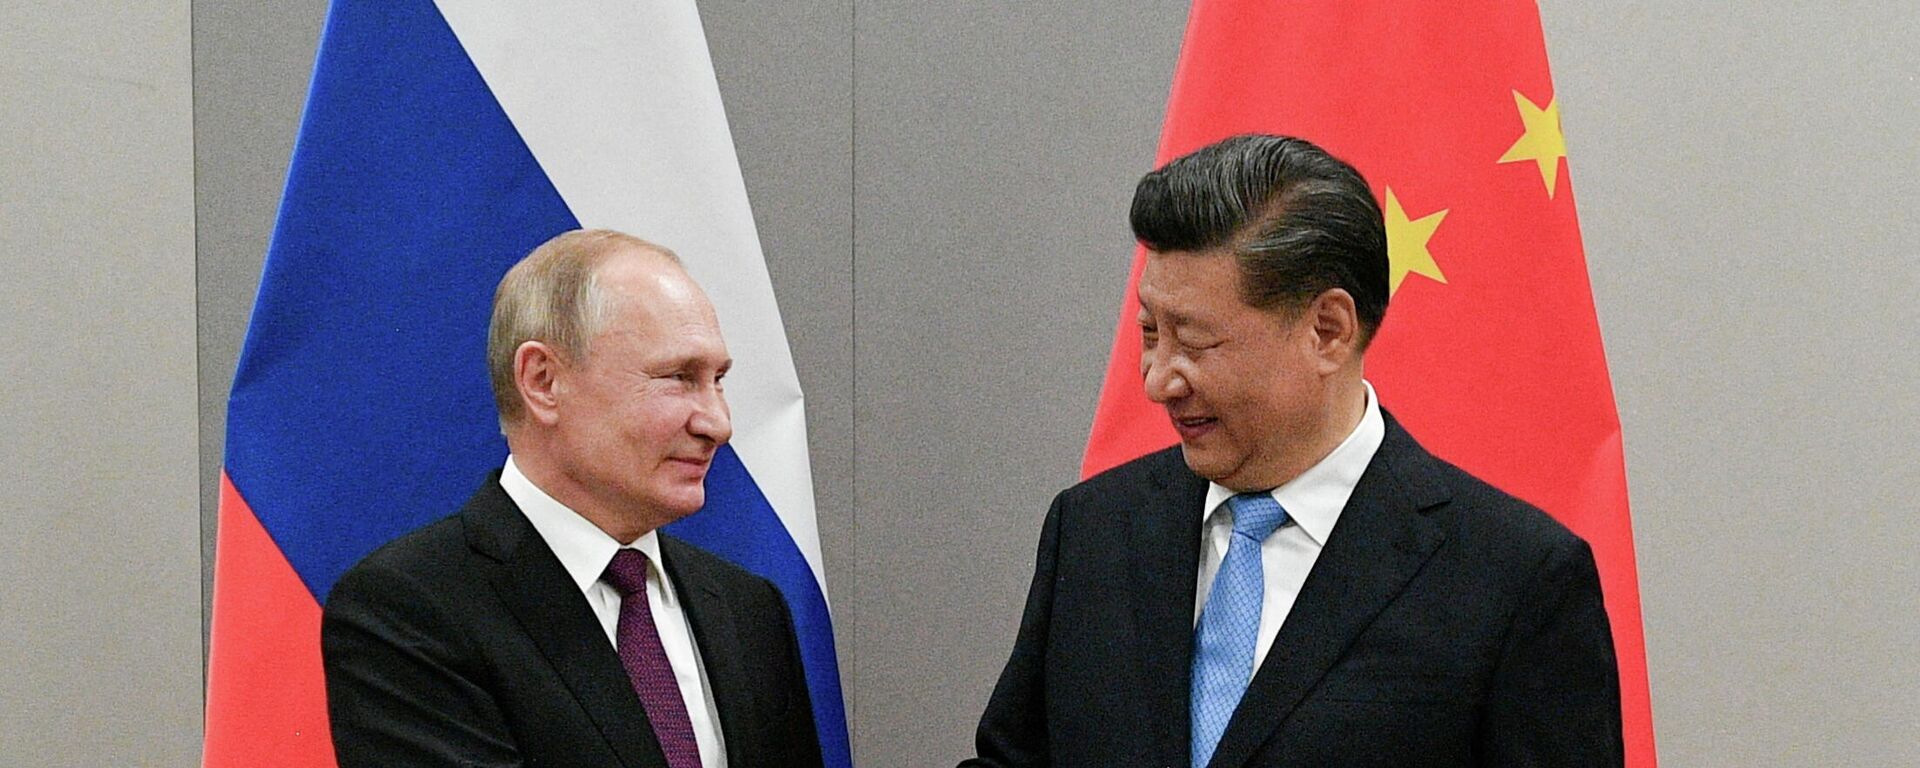 El presidente de Rusia y el presidente de China - Sputnik Mundo, 1920, 15.12.2021